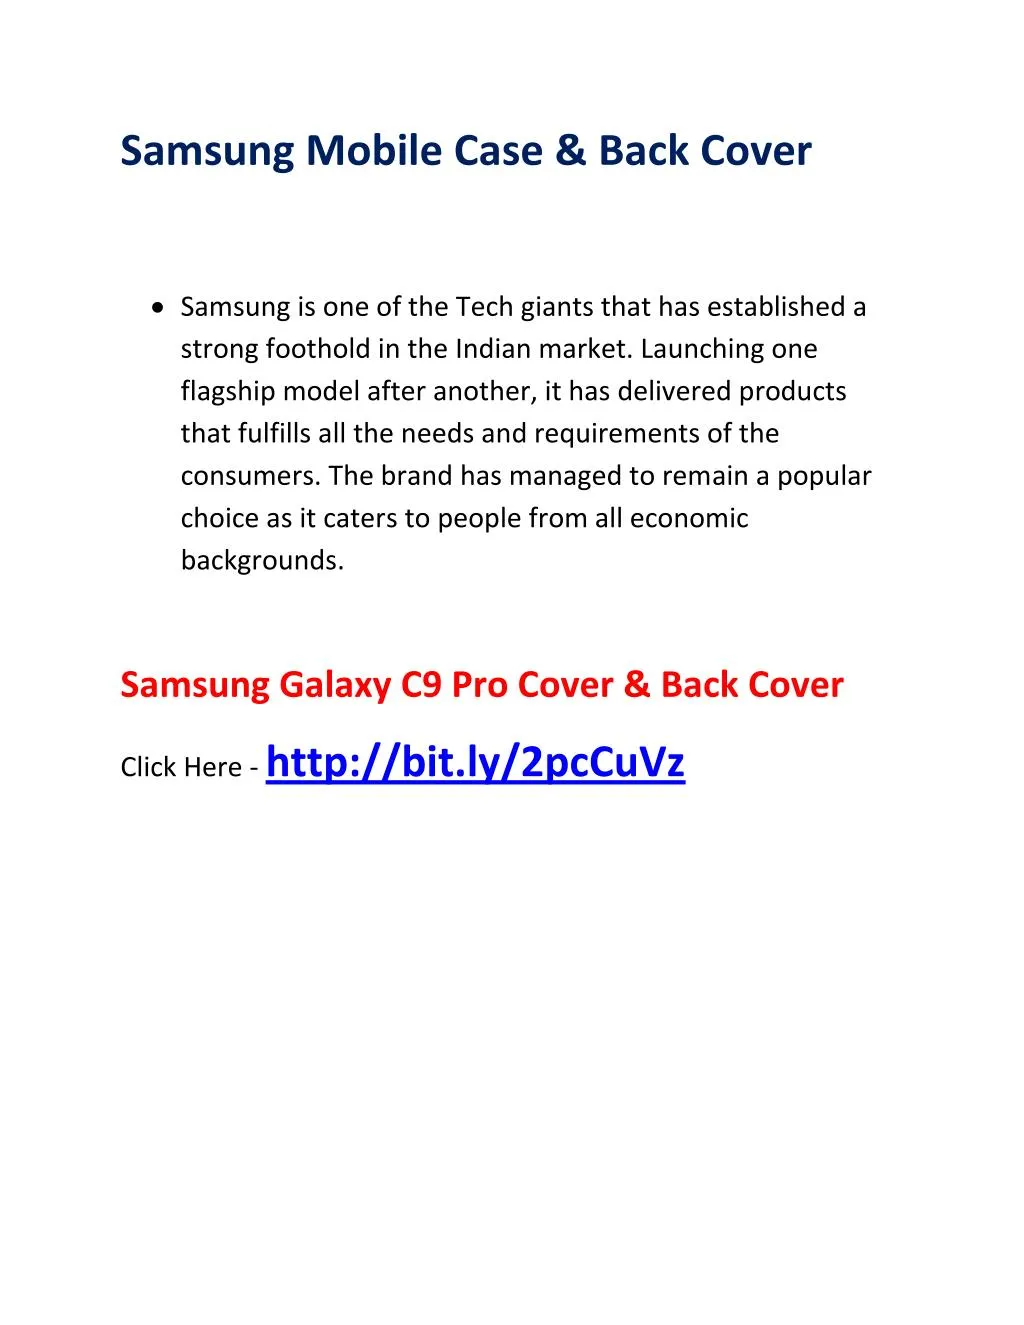 samsung mobile case back cover n.